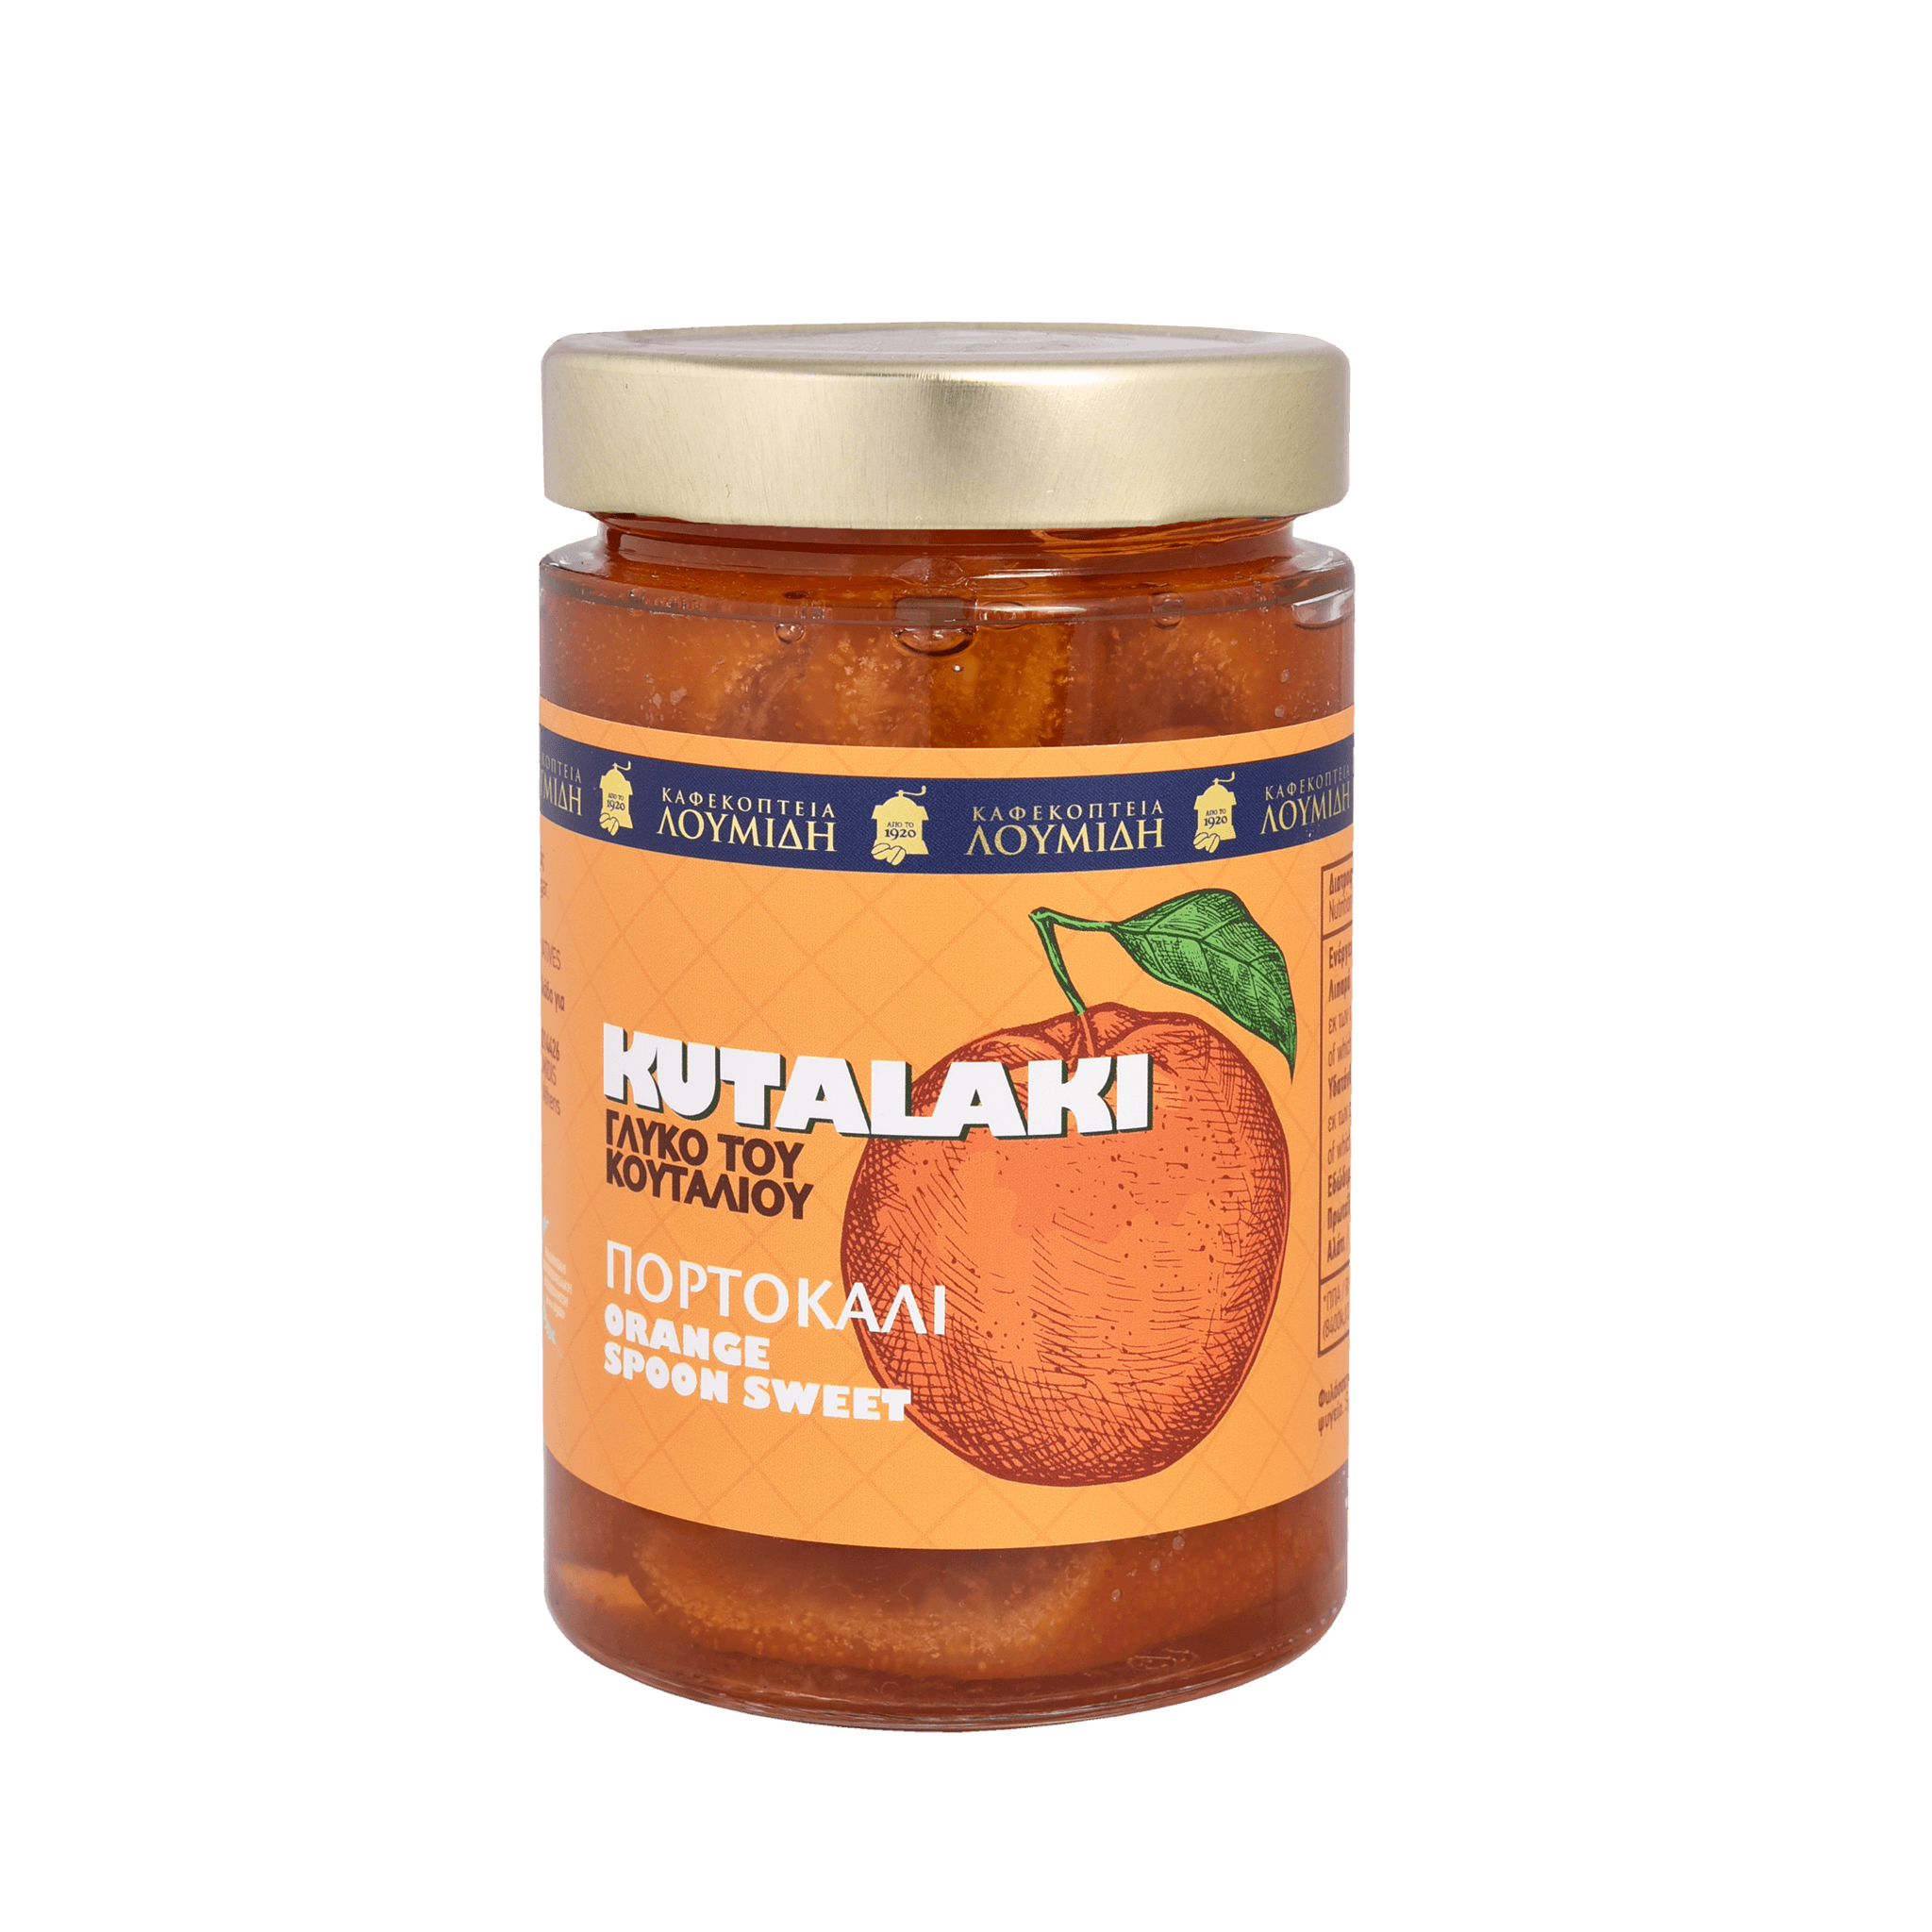 Γλυκό Κουταλιού Πορτοκάλι - Καφεκοπτεία Λουμίδη | 490γρ - Καφεκοπτεία Λουμίδη